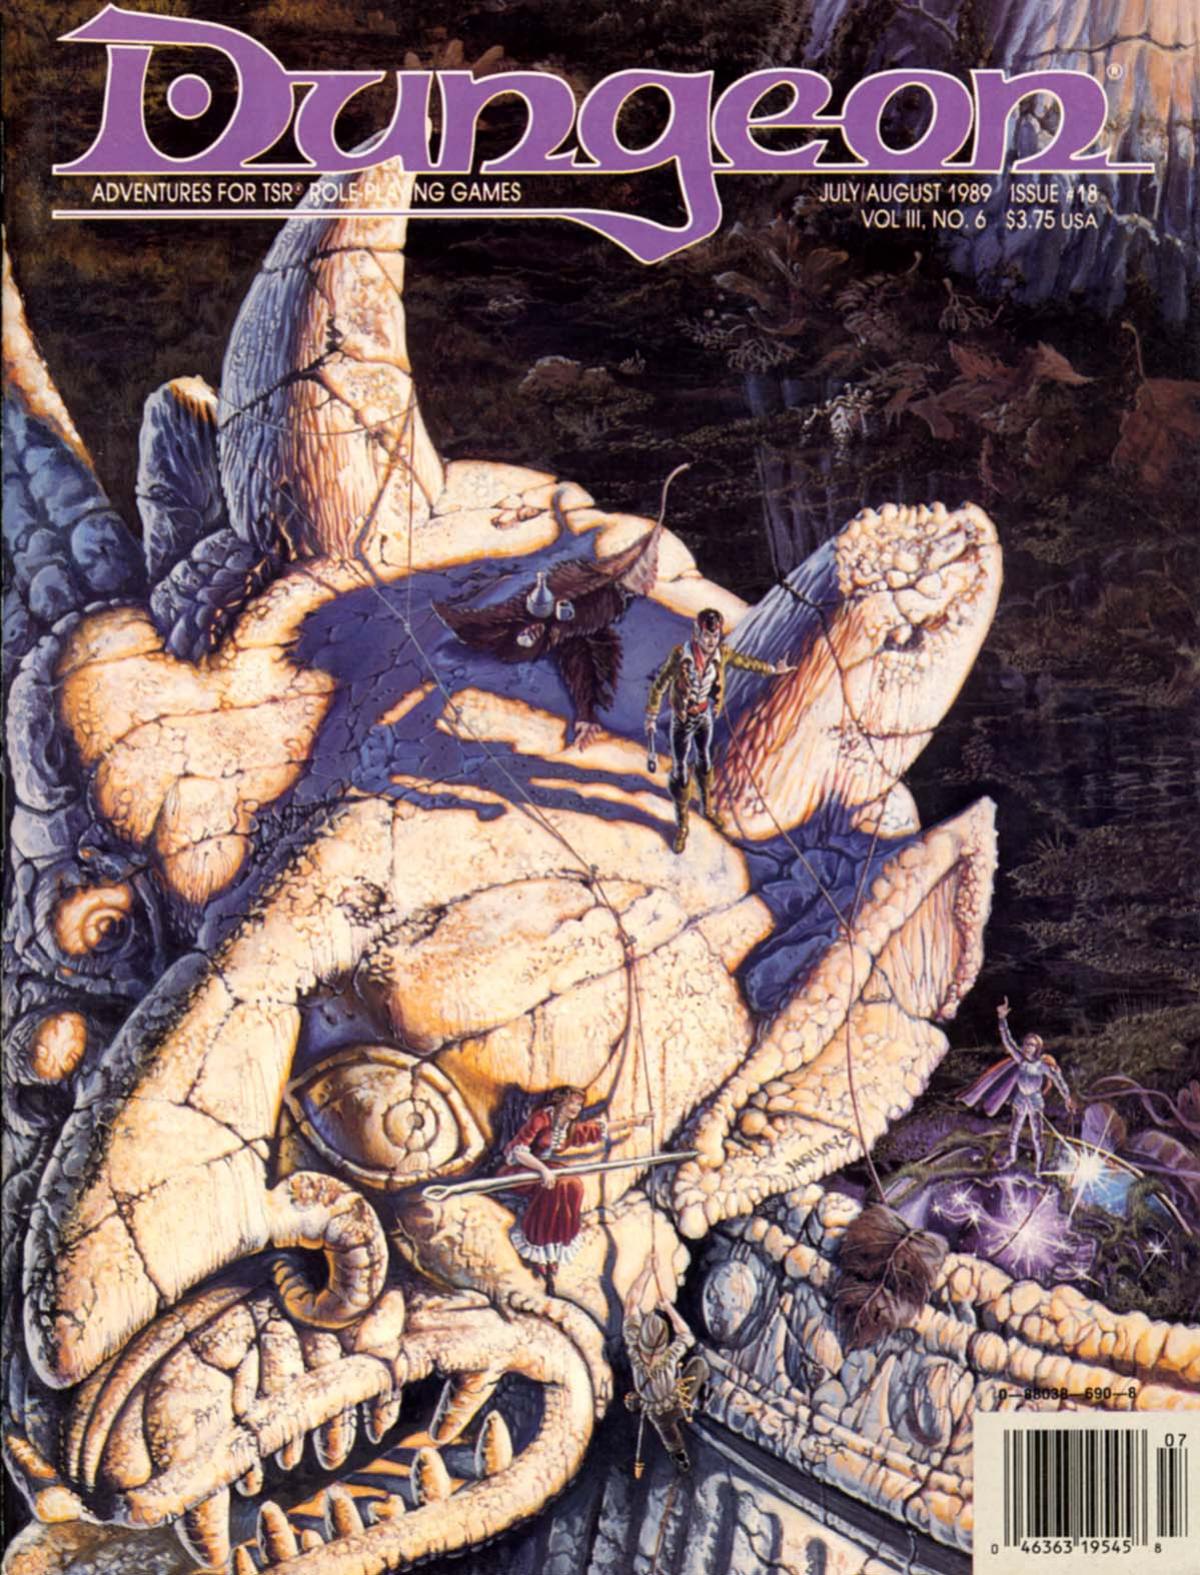 Dungeon Magazine #18 Jul/Aug 1989